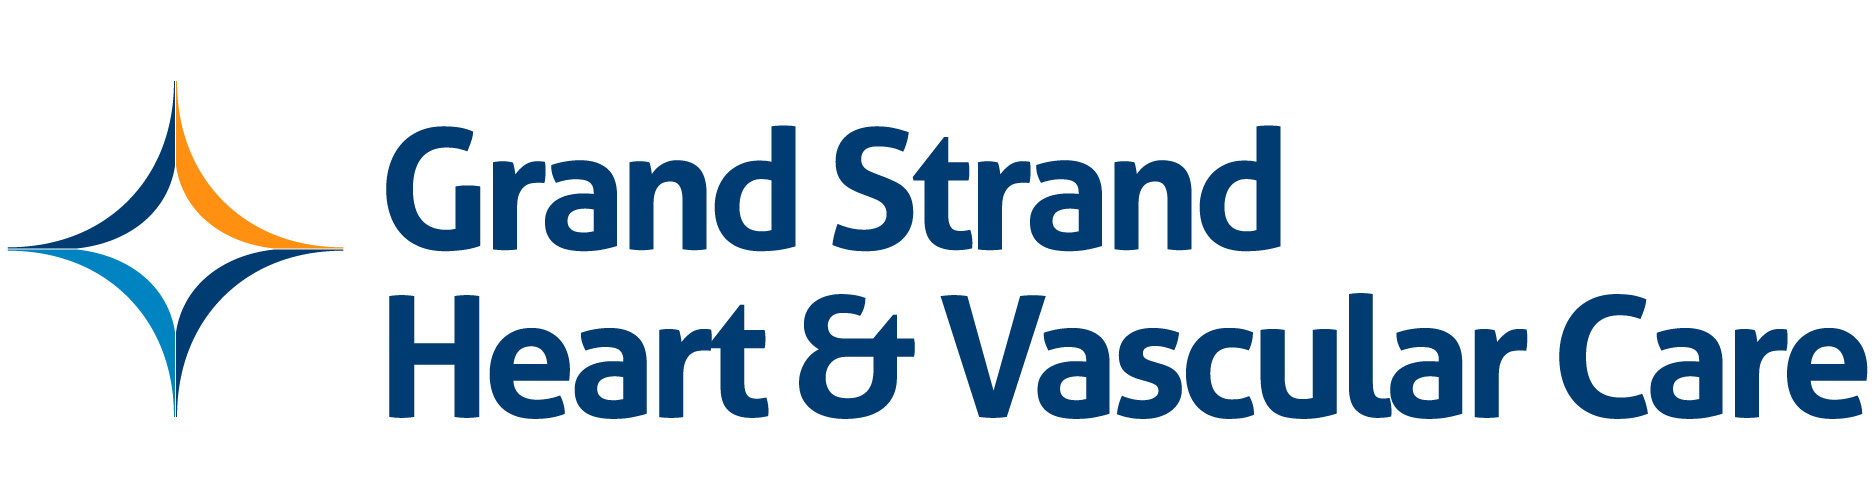 Grand Strand Heart & Vascular Care